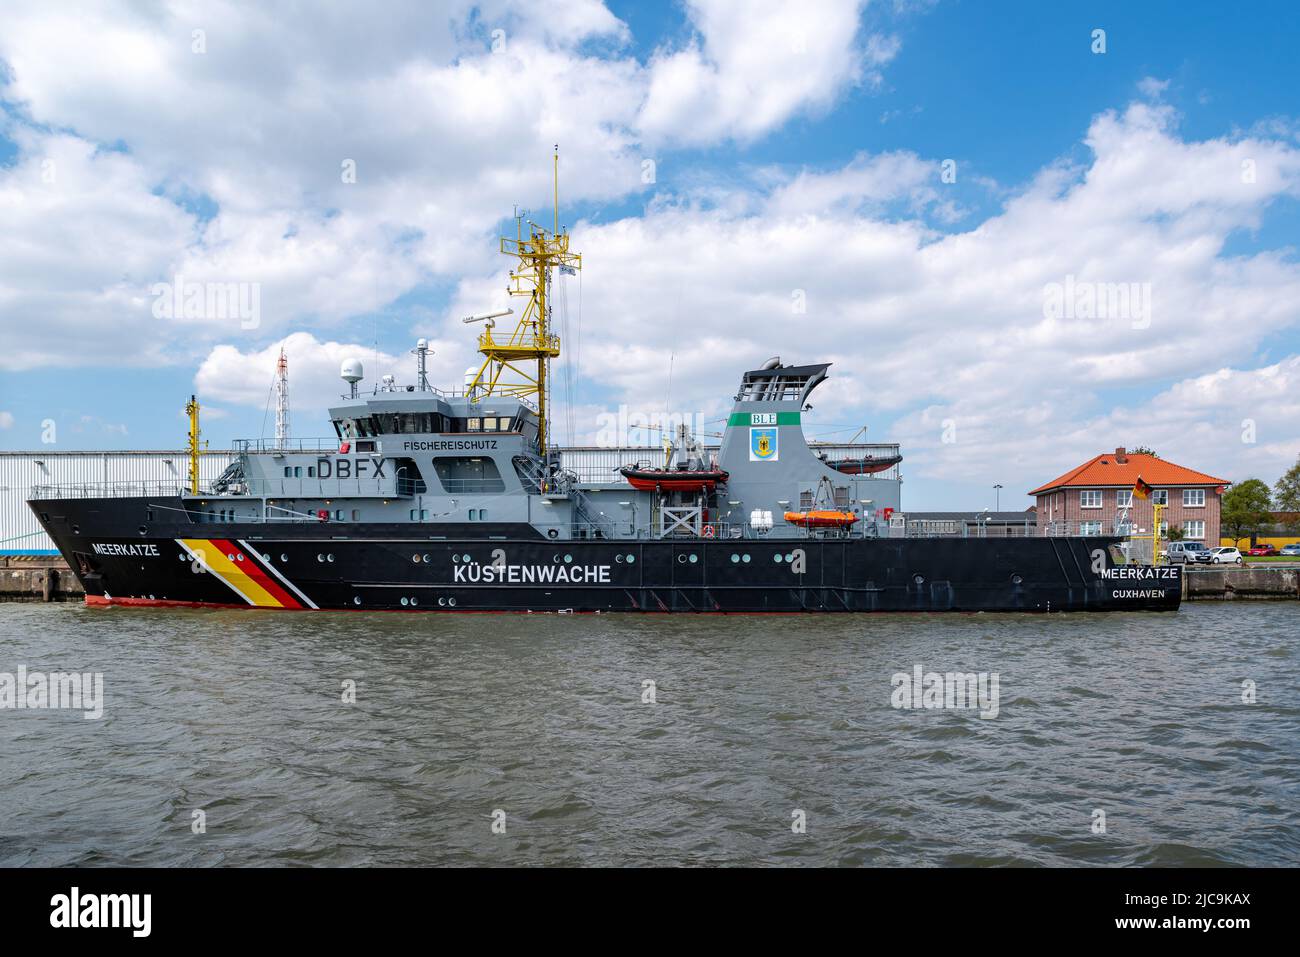 Cuxhaven, Niedersachsen Allemagne - 05 02 2018: Vue sur le navire Meerkatze, un bateau de protection de la pêche de la Garde côtière allemande, situé dans le port de Banque D'Images